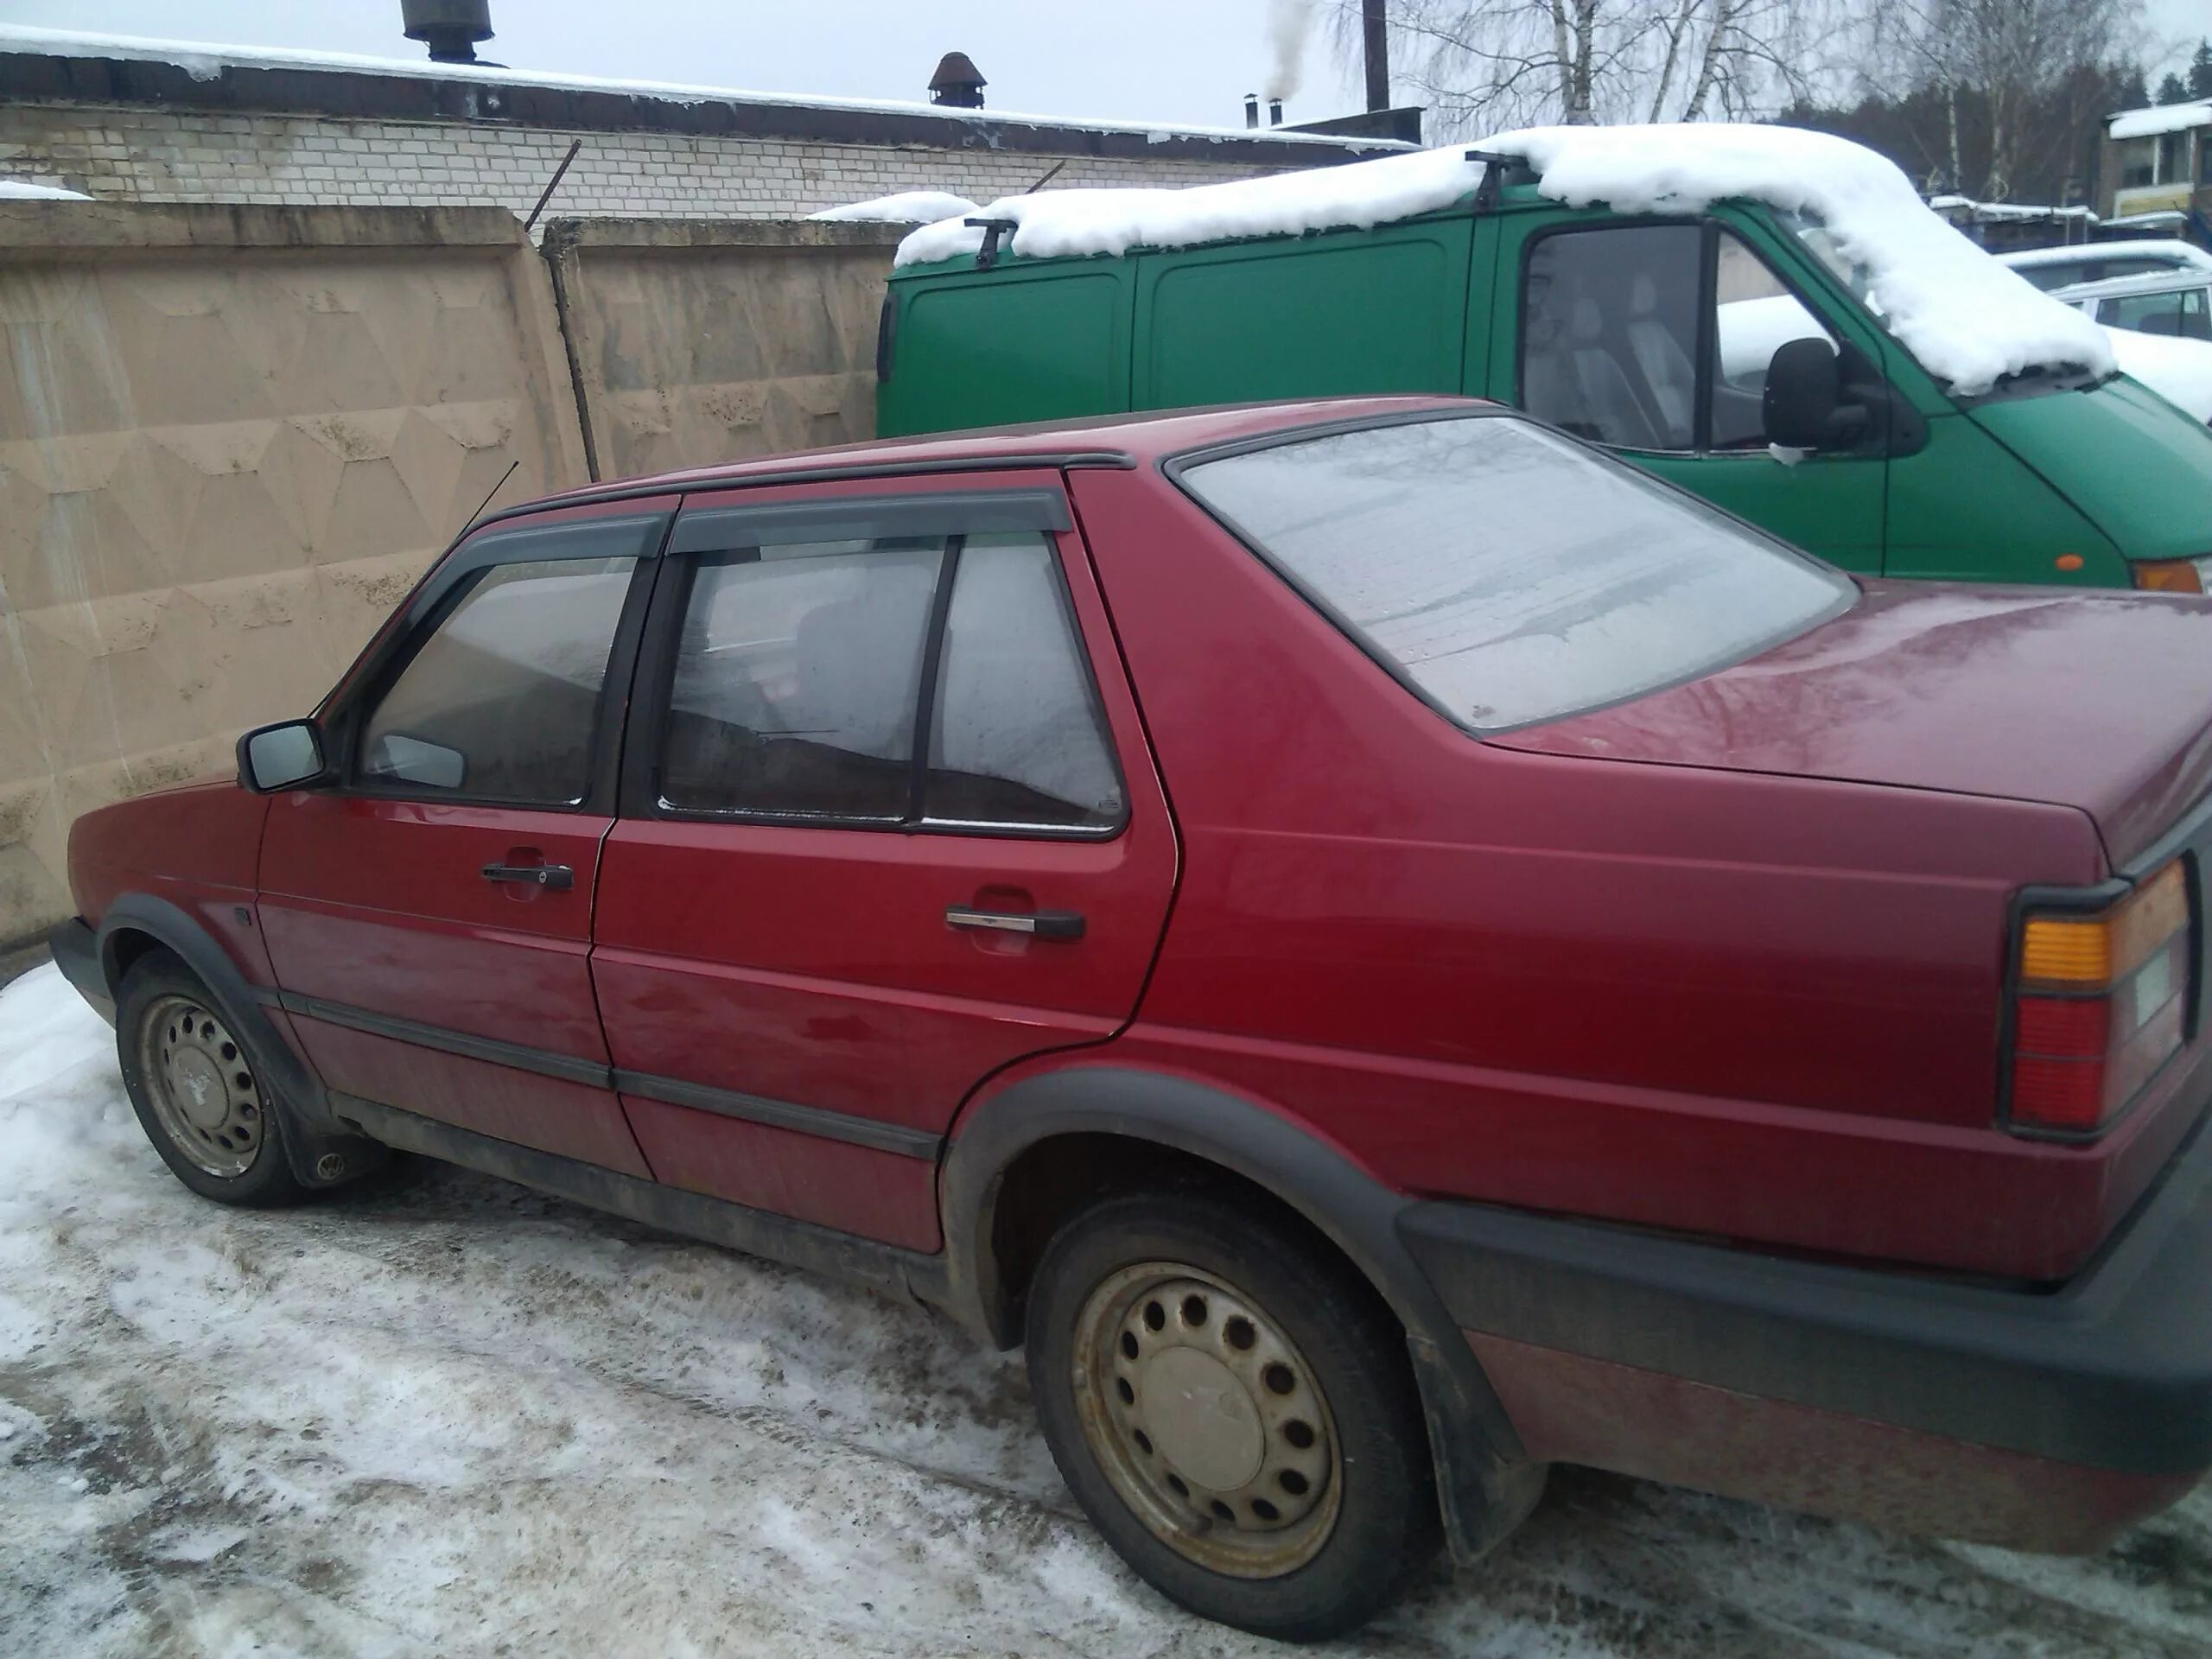 Продажа авто в Витебской области. Купить авто в Полоцке и Новополоцке бу на Куфаре.